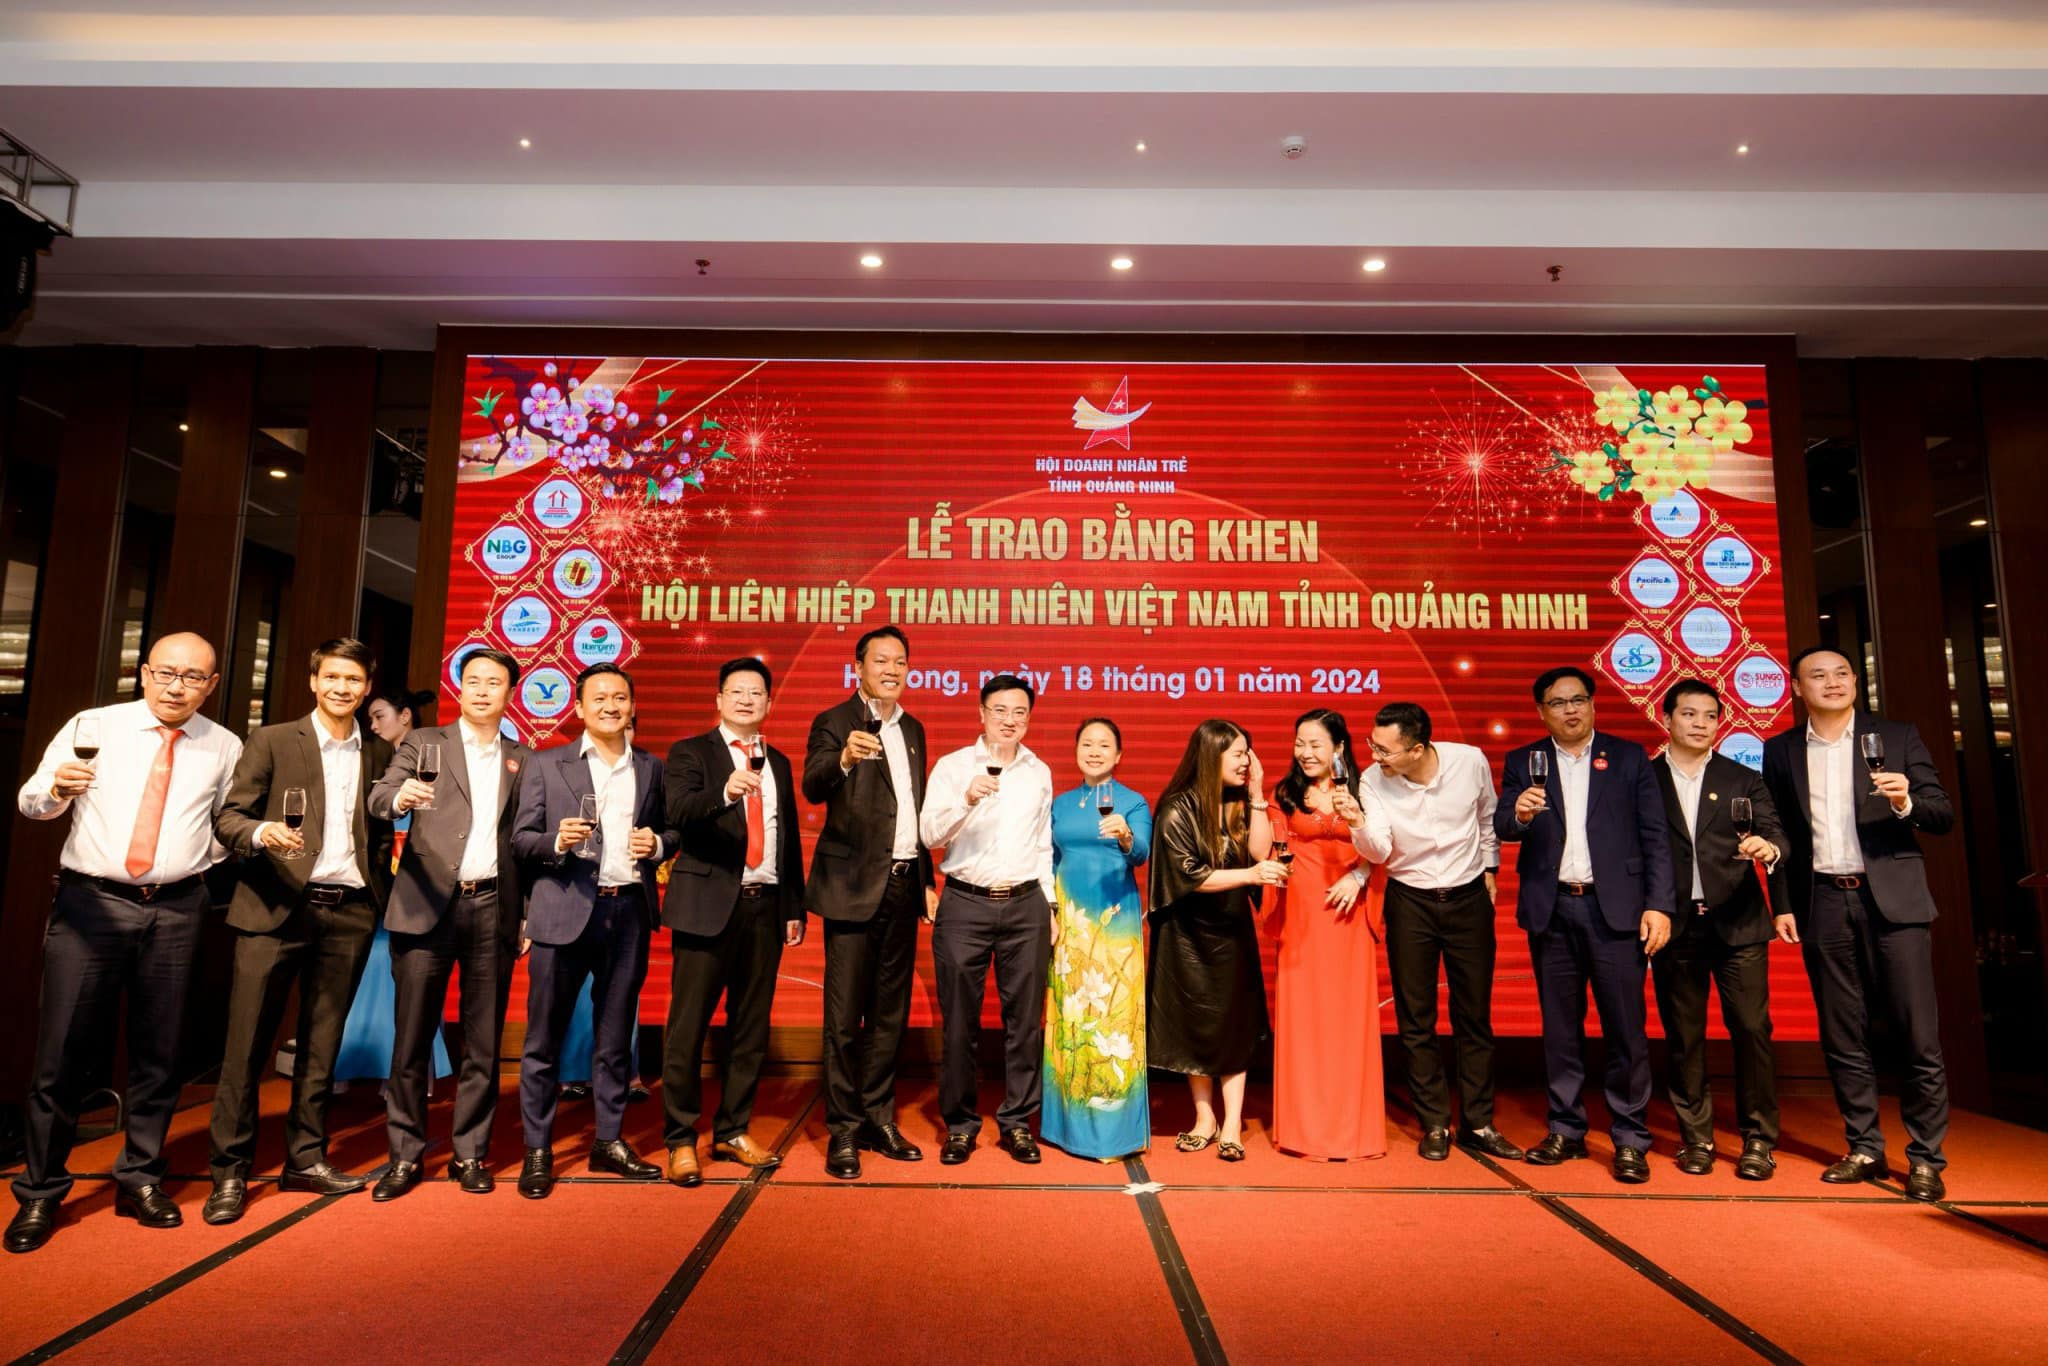 Gala Dinner Tổng kết Hội Doanh nhân trẻ Quảng Ninh năm 2023 chào xuân Giáp Thìn năm 2024